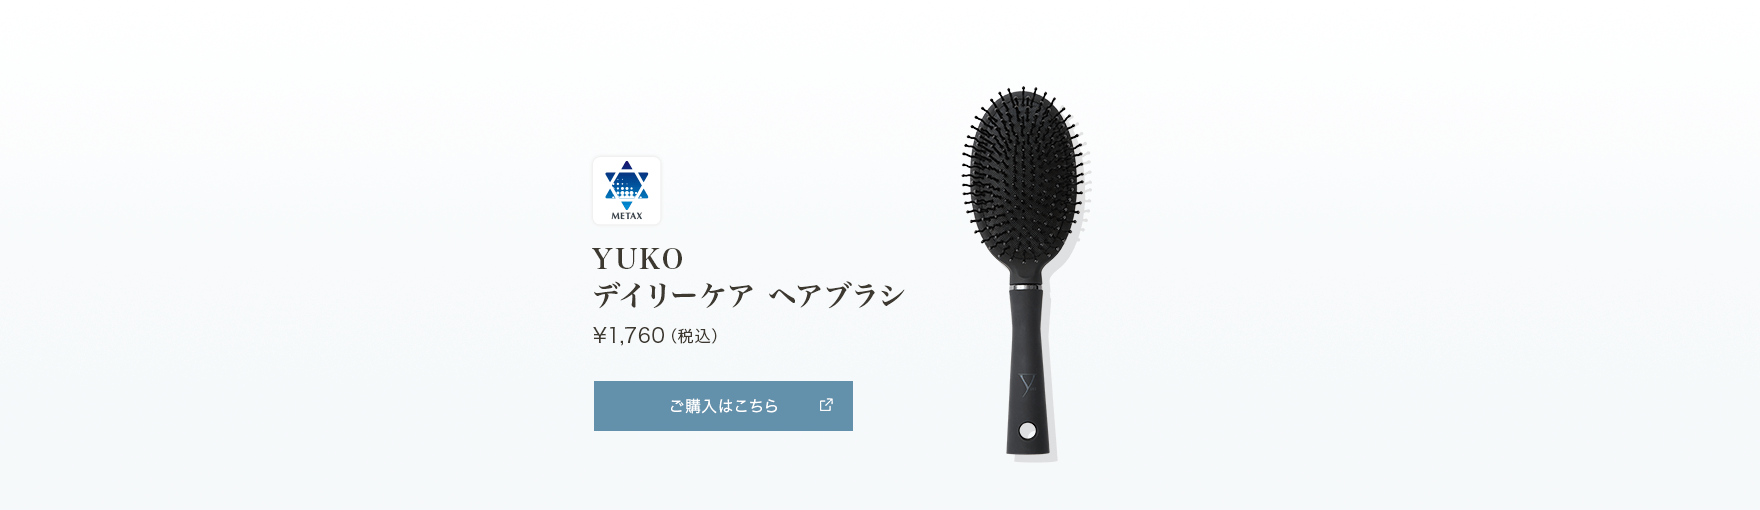 YUKOデイリーケアヘアブラシ 10/7販売 数量限定商品 ¥1,760（税込）